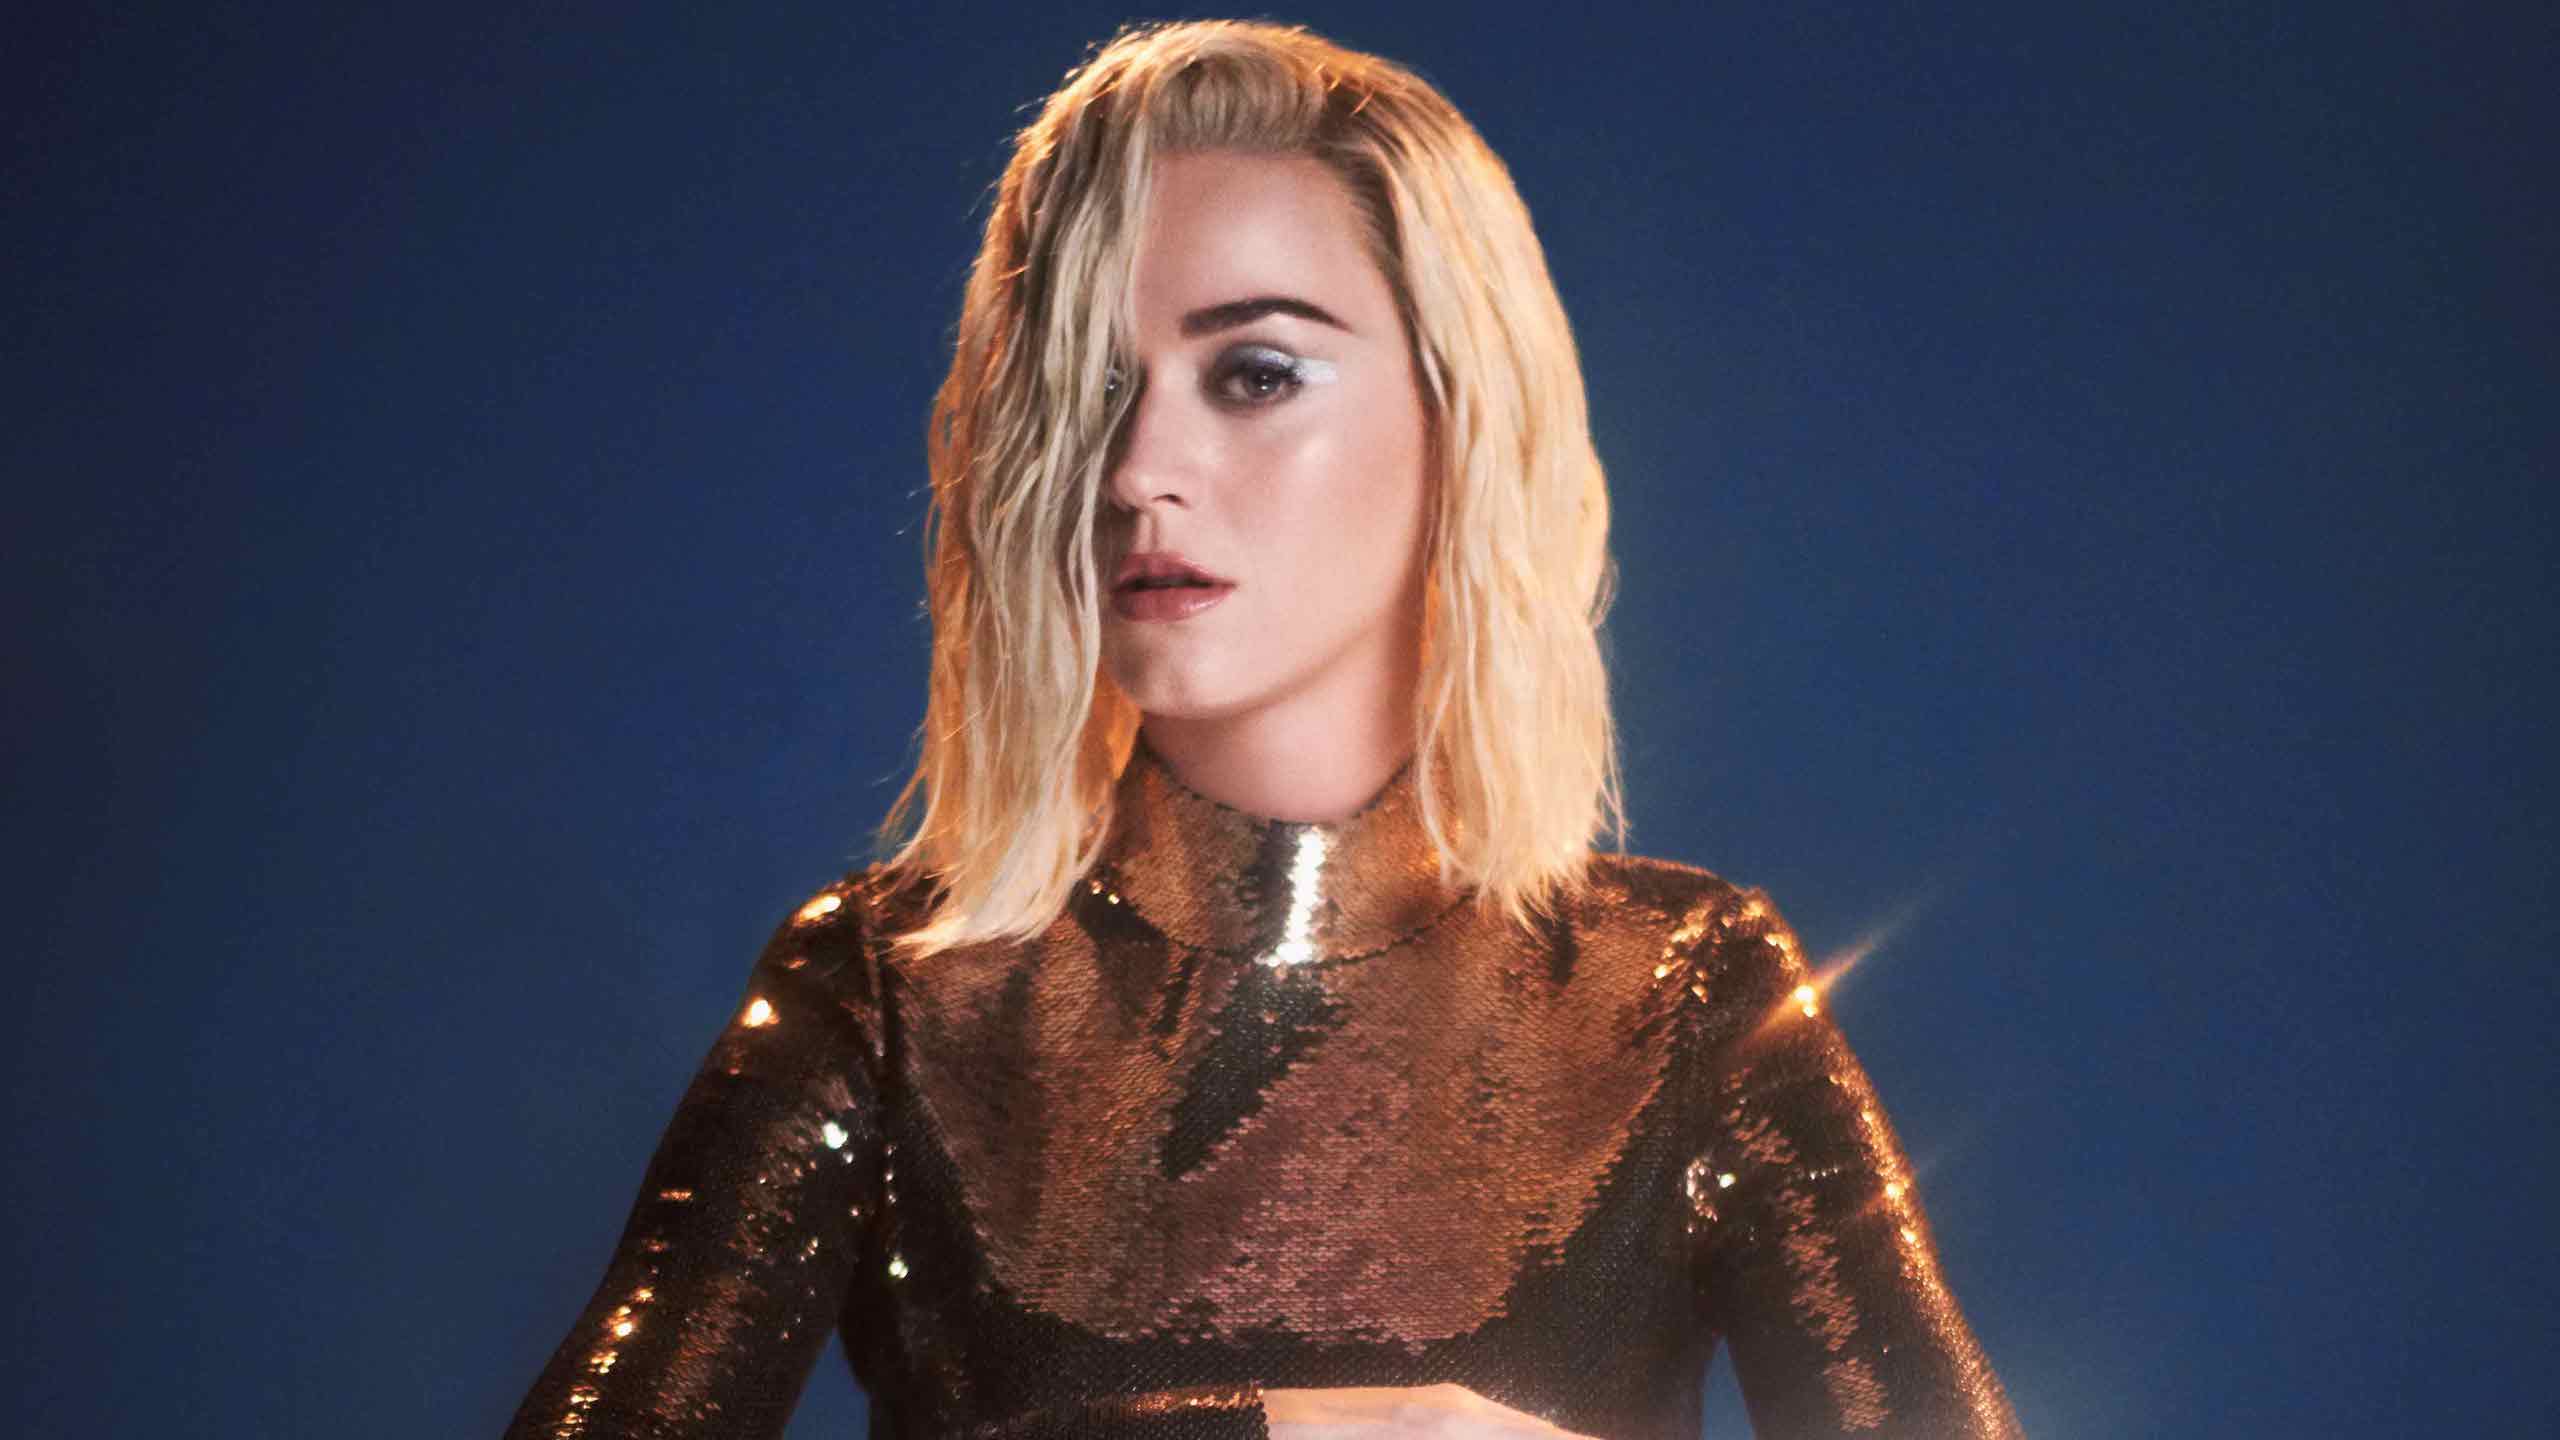 Katy Perry Announces 2018 Australian Tour Dates